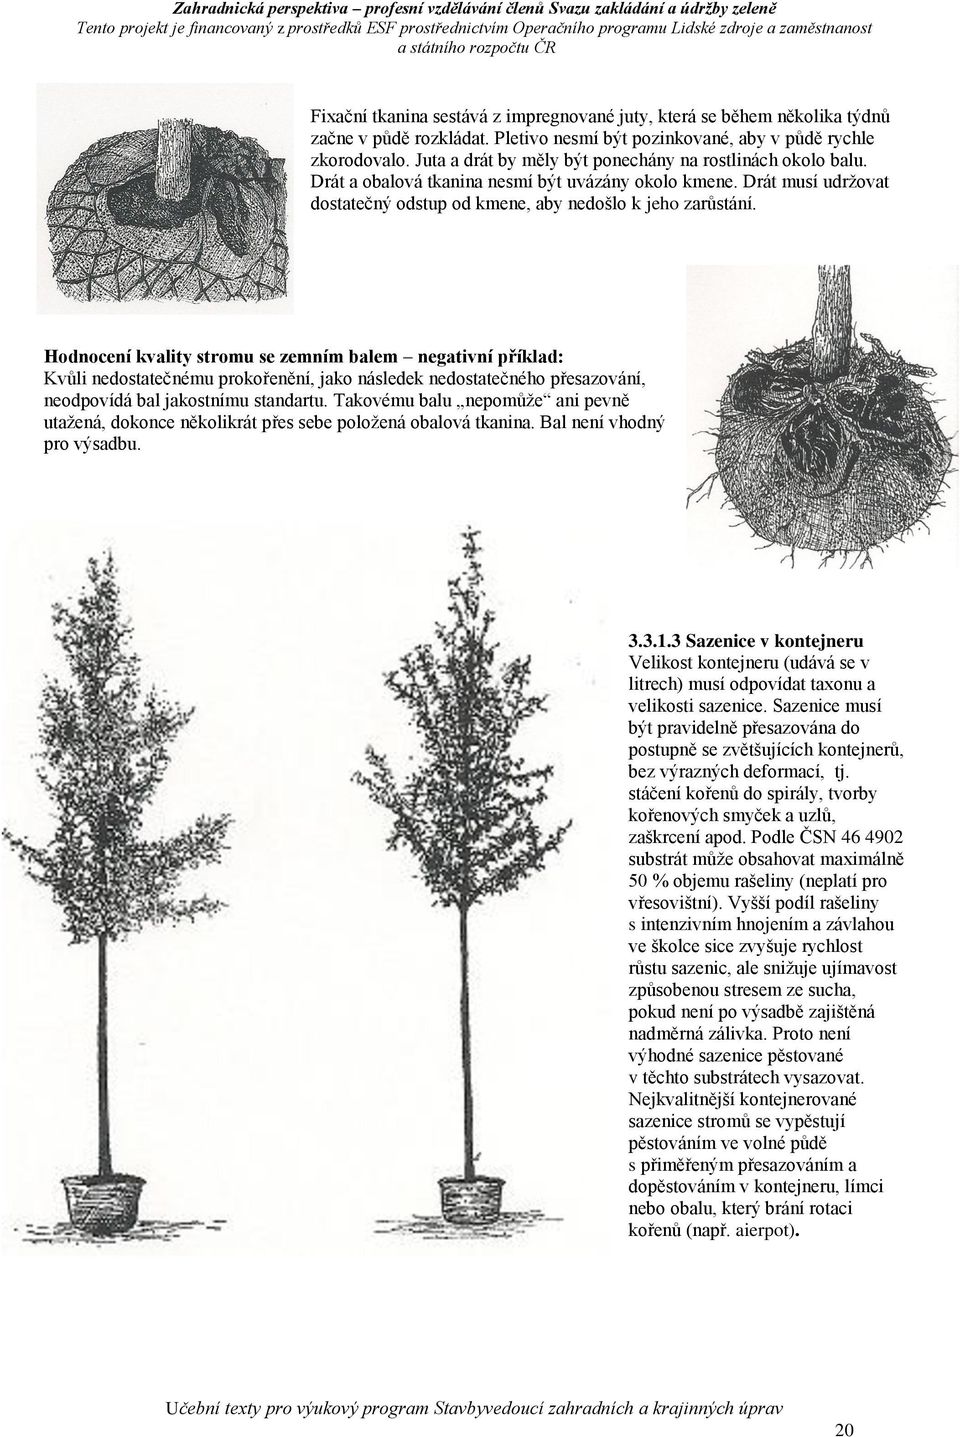 Hodnocení kvality stromu se zemním balem negativní příklad: Kvůli nedostatečnému prokořenění, jako následek nedostatečného přesazování, neodpovídá bal jakostnímu standartu.